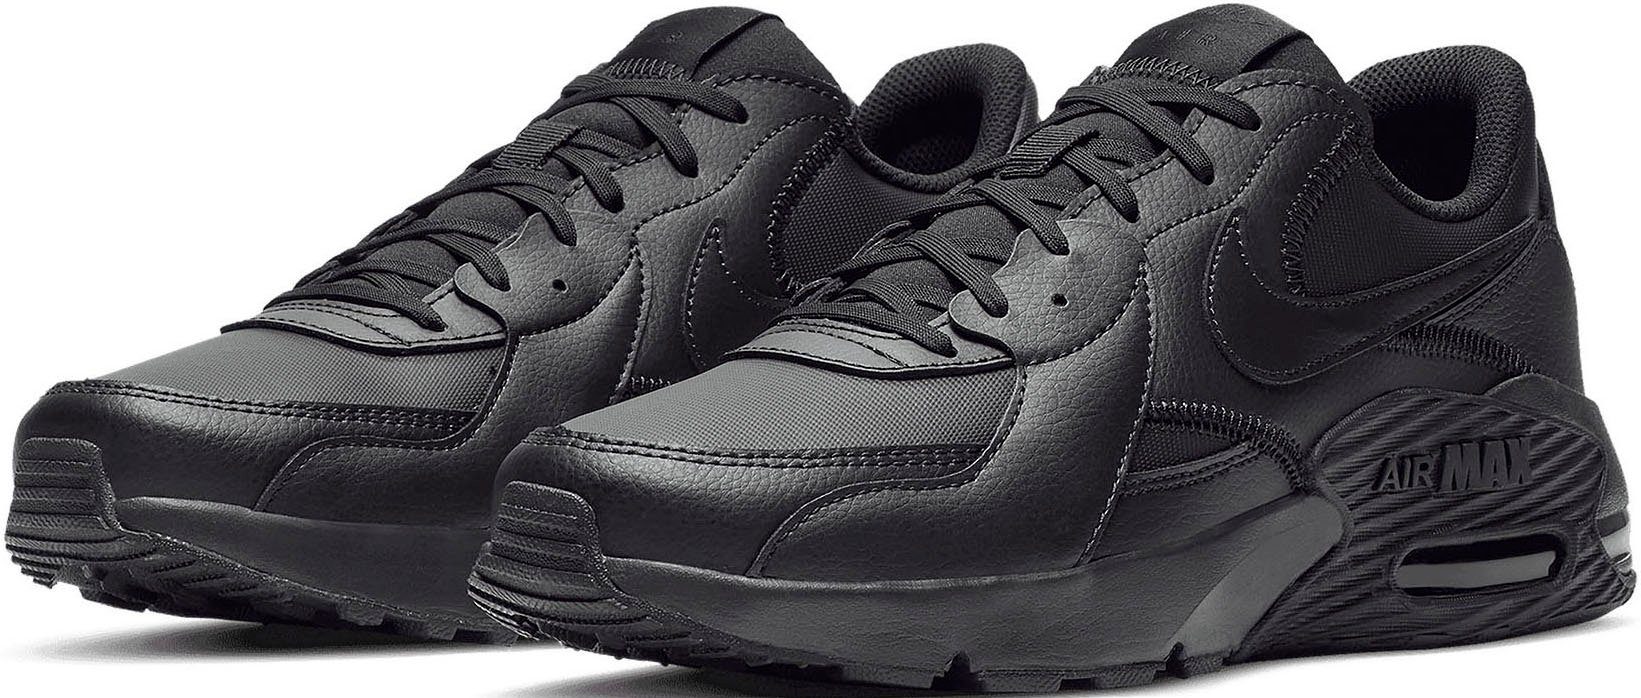 Schwarze Nike Herrenschuhe online kaufen | OTTO